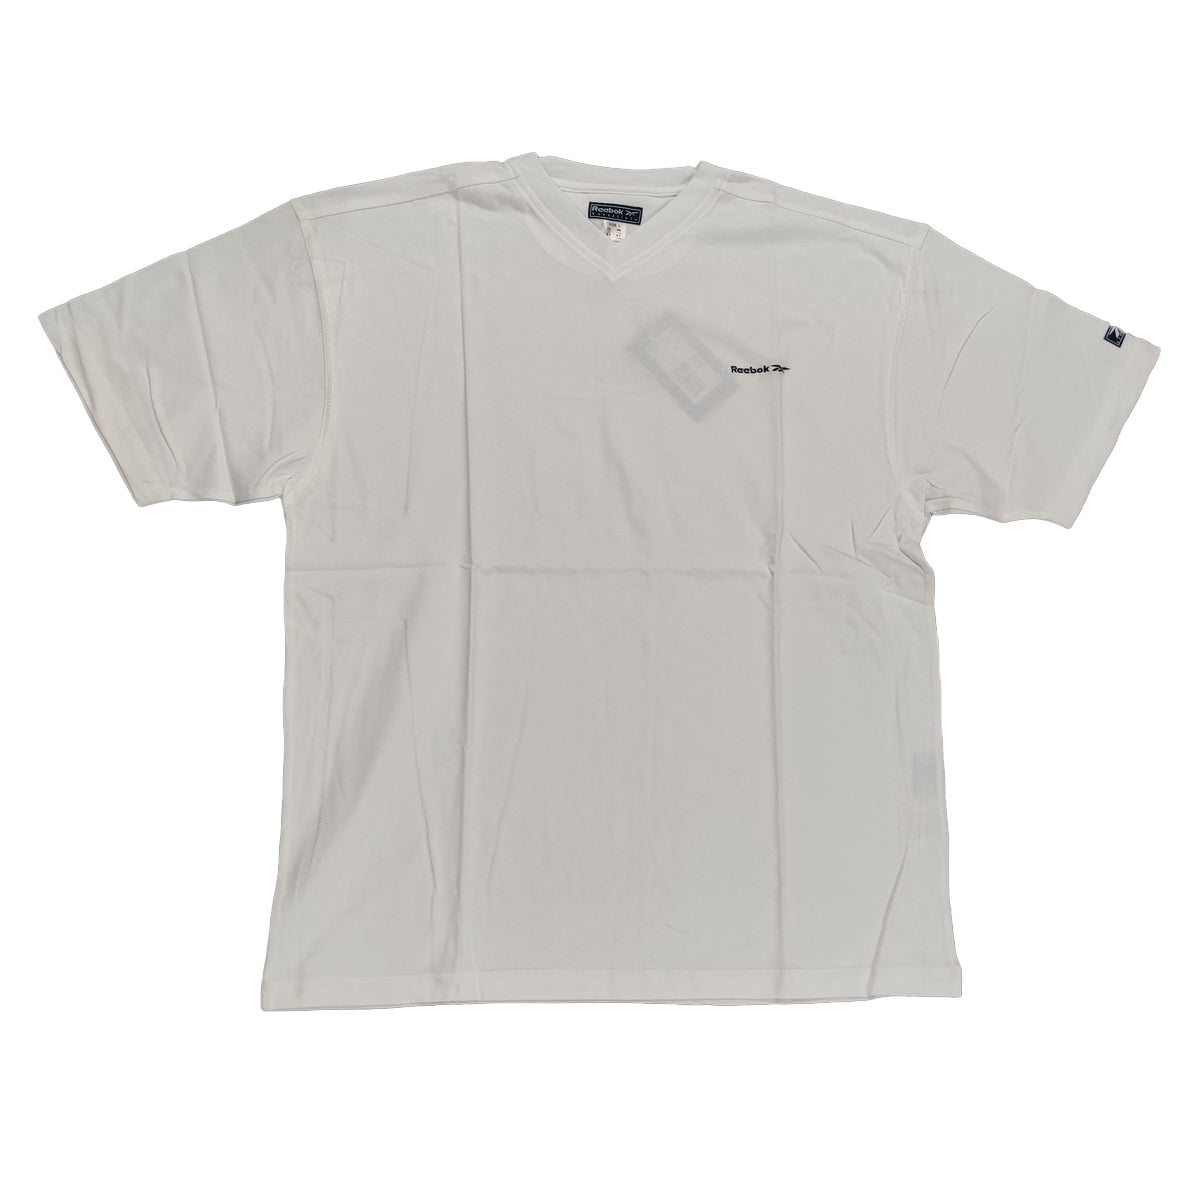 Reebok Mens Clearance Plain White V-Neck T-Shirt - Large